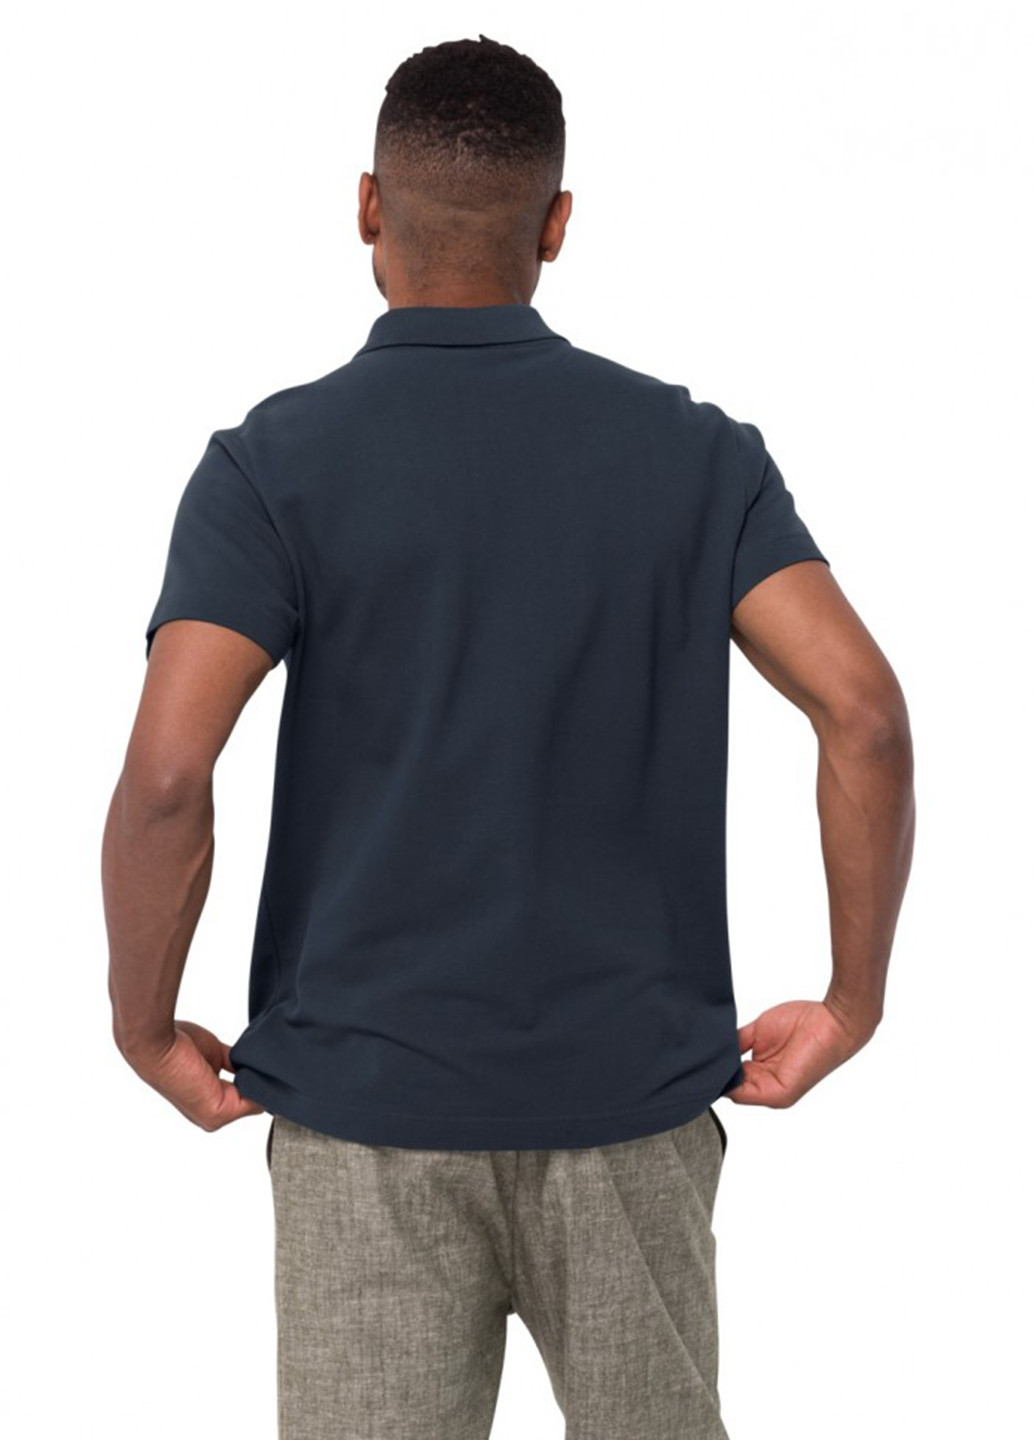 Темно-синяя футболка-поло для мужчин Jack Wolfskin с логотипом